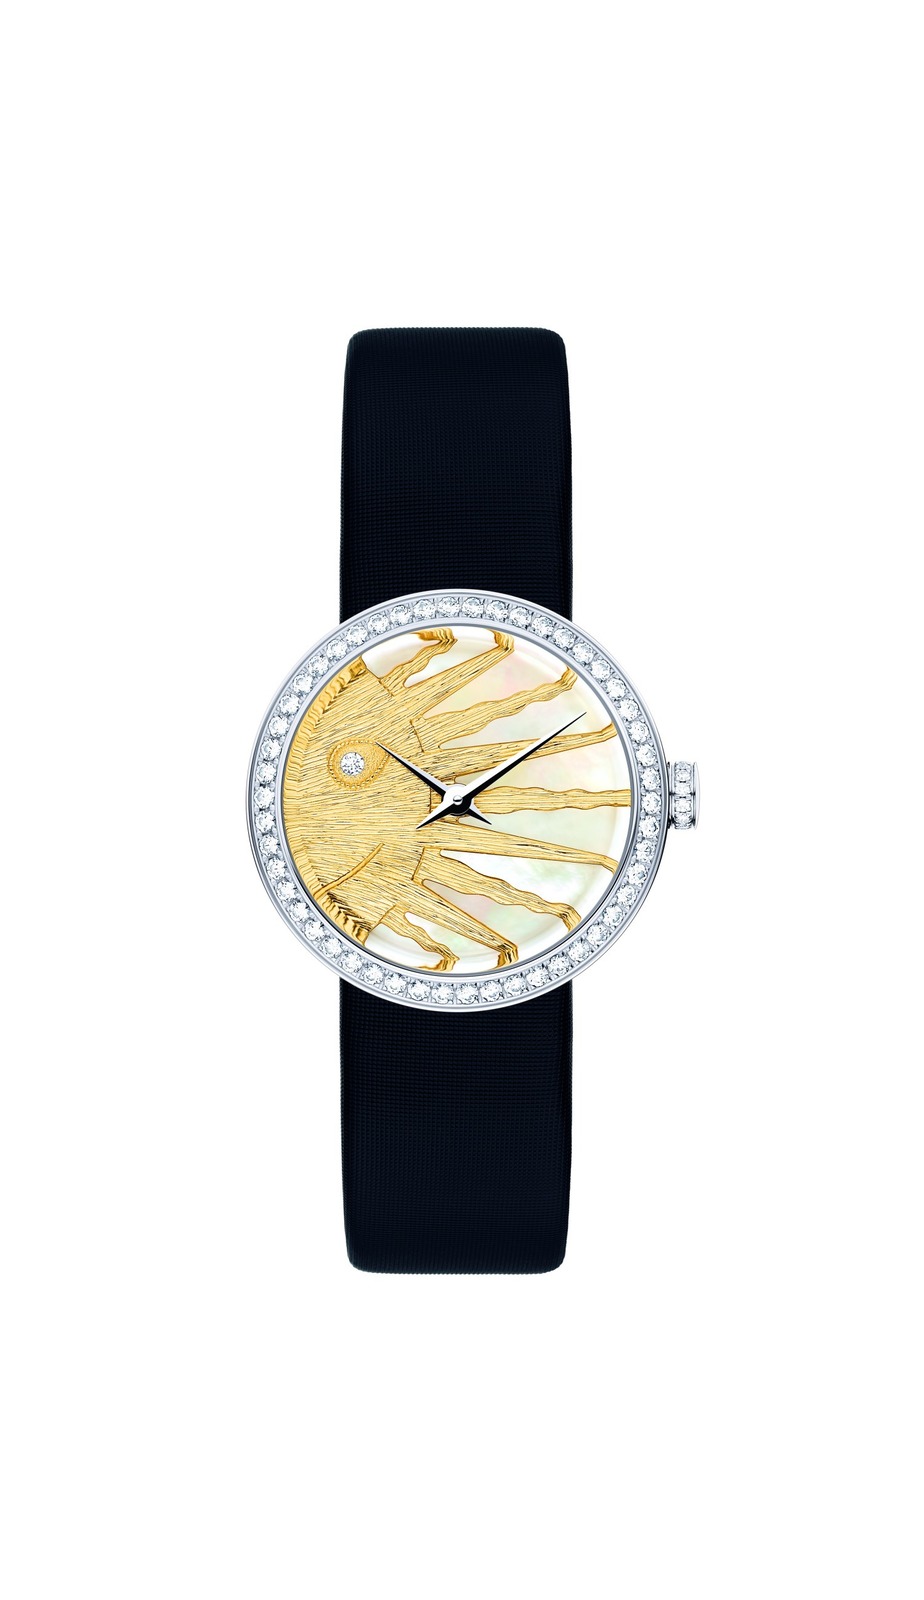 ディオールの新作腕時計“月と太陽”のジュエリーウォッチ「ラ デ ドゥ ...